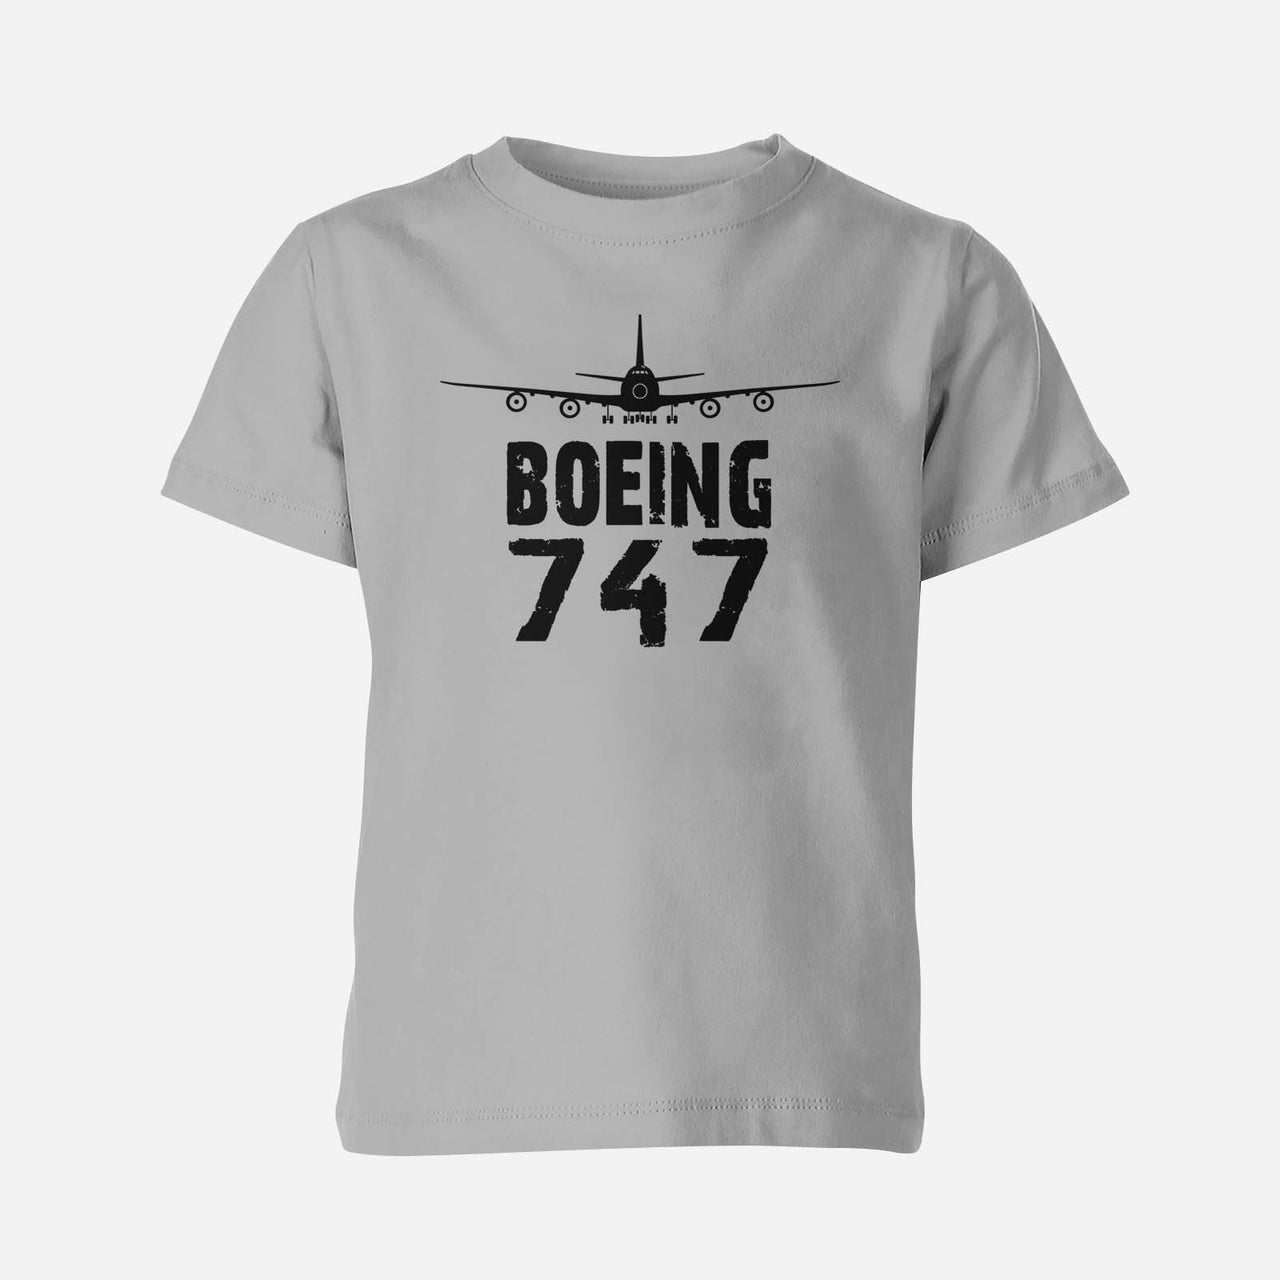 Boeing 747 & Plane Designed Children T-Shirts